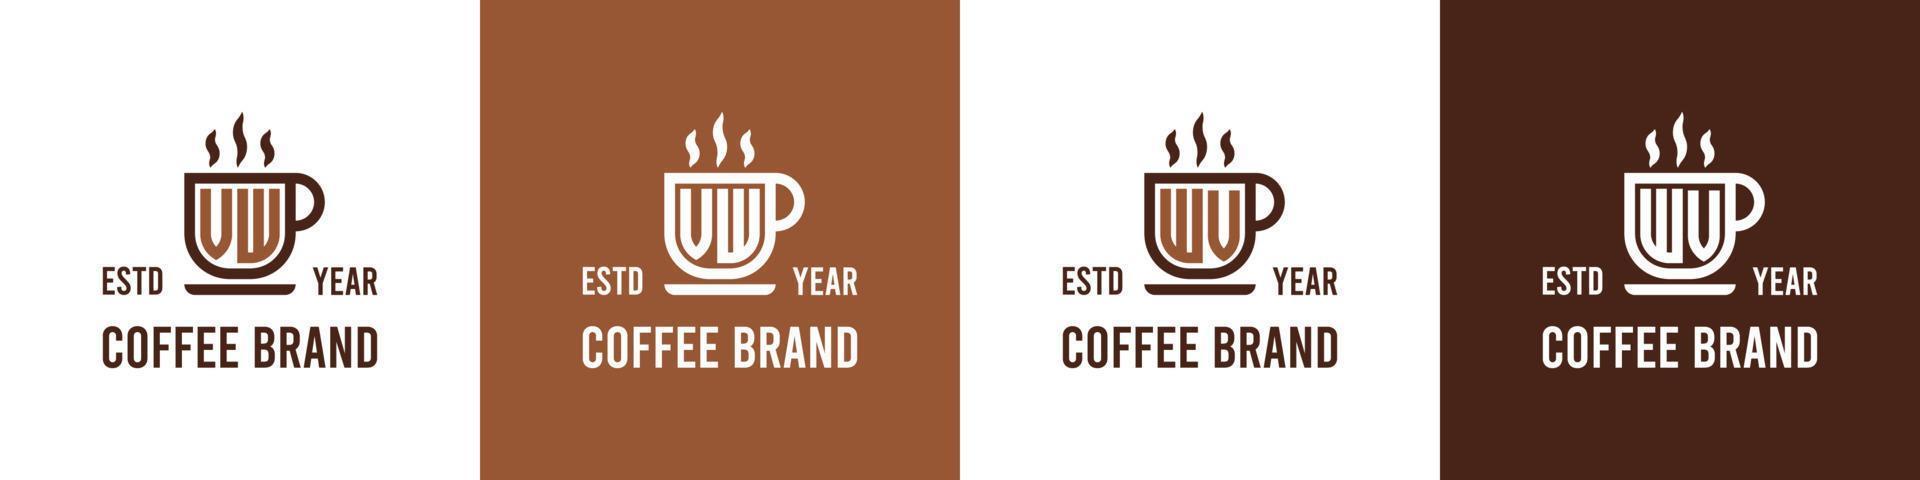 brief vw en wv koffie logo, geschikt voor ieder bedrijf verwant naar koffie, thee, of andere met vw of wv initialen. vector